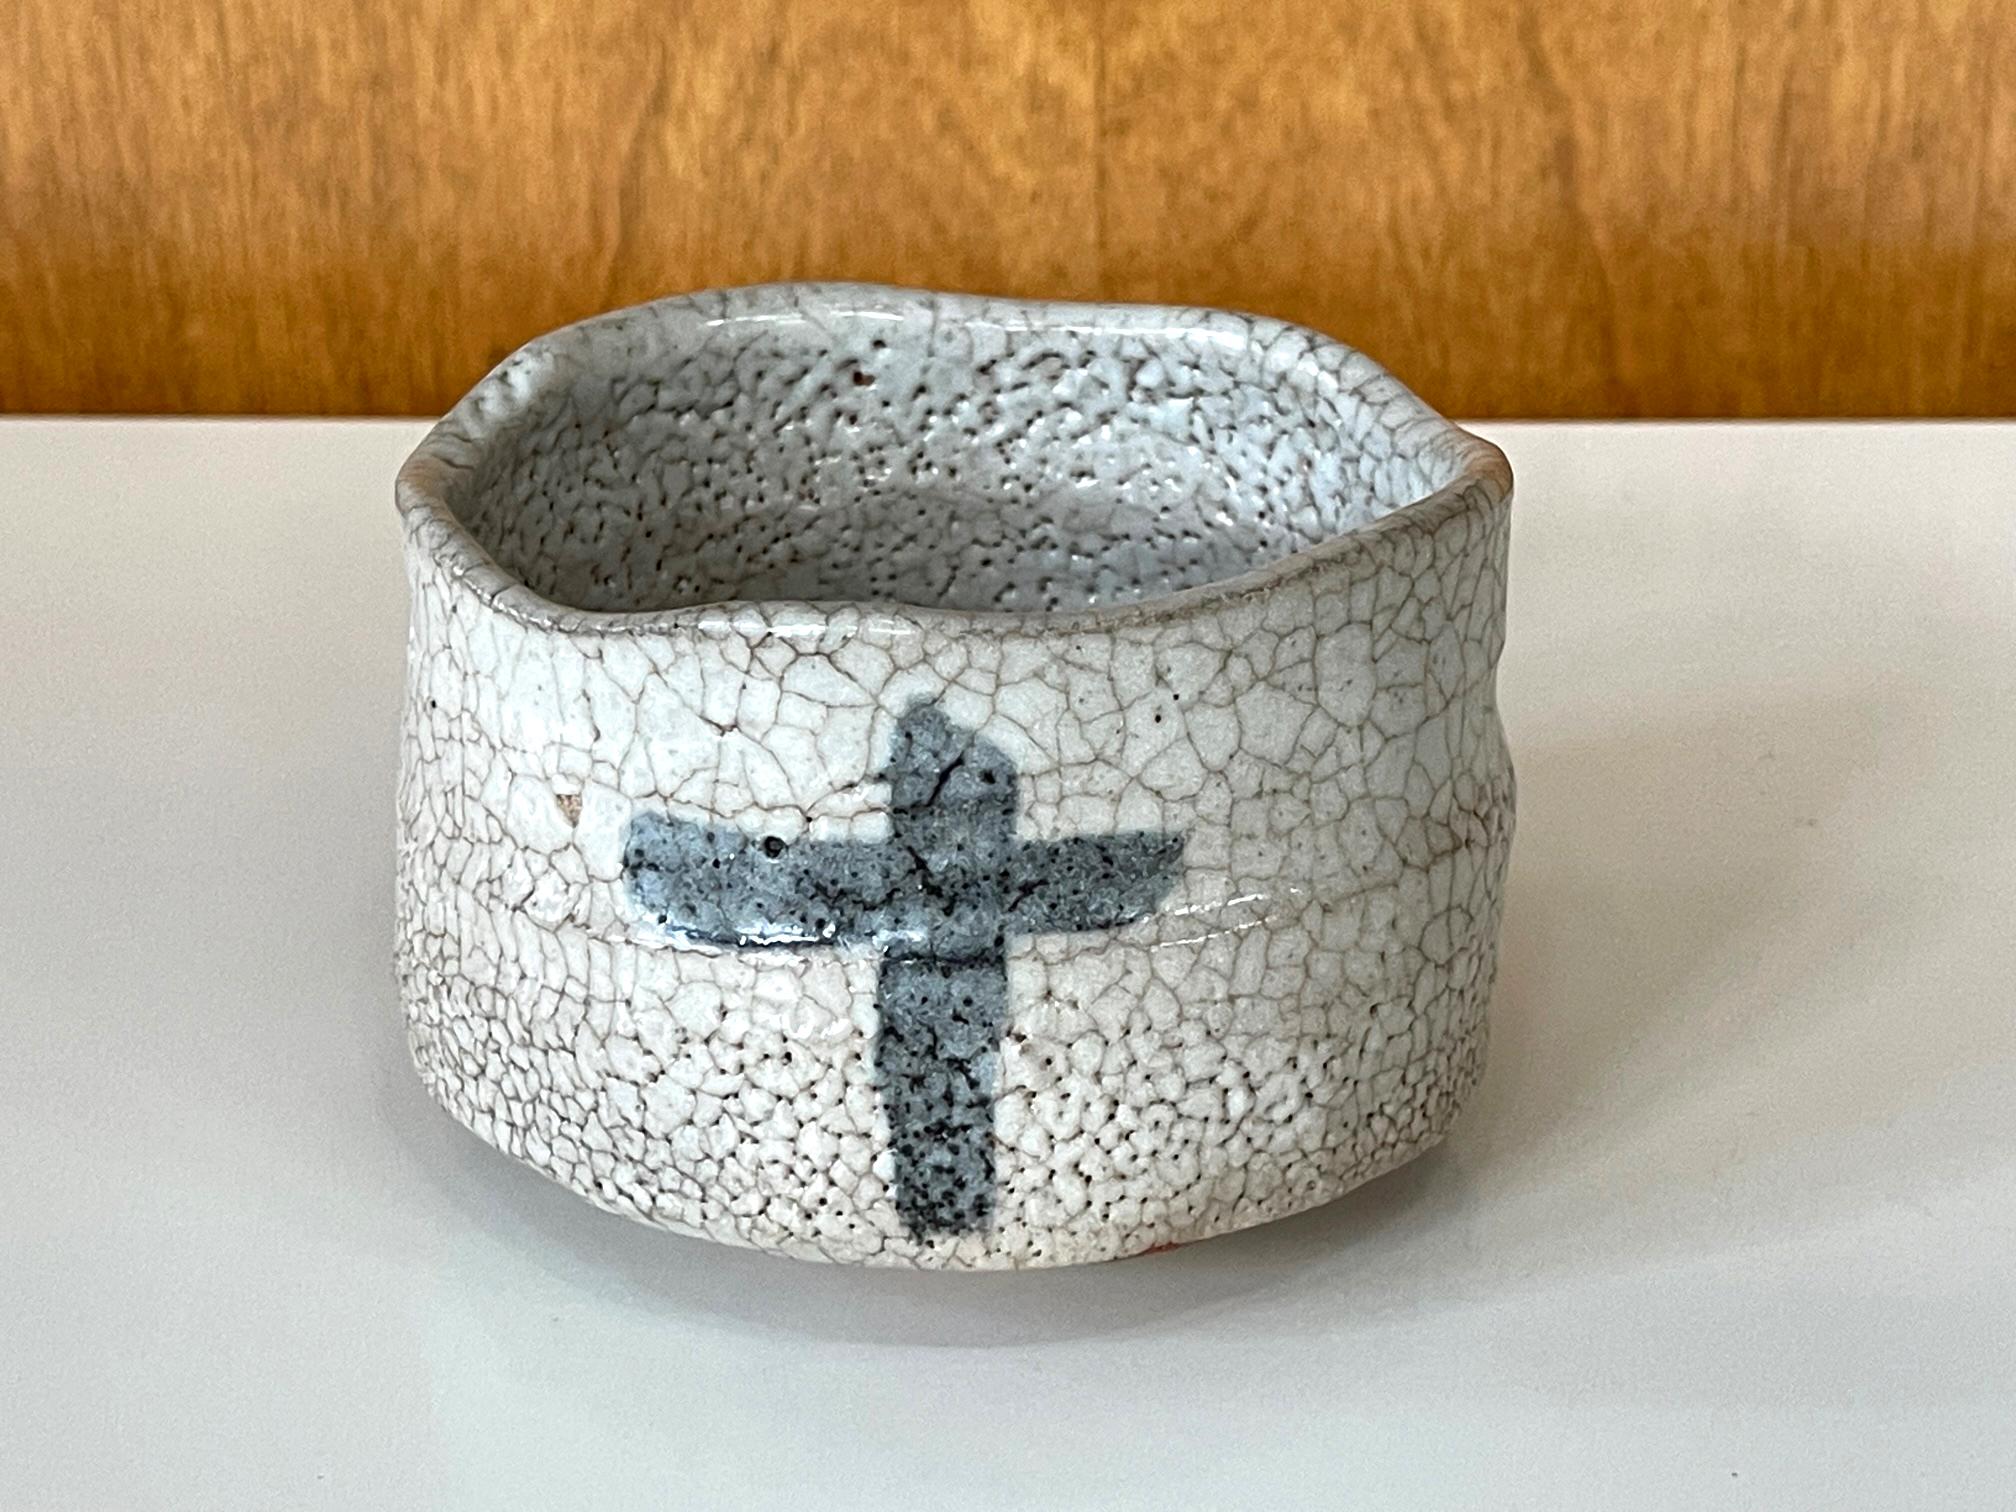 Eine moderne japanische Teeschale (Chawan) aus Keramik des Töpfers Toyoda Katsuhiko (1945-). Die Schale wurde in der Tradition der Shino-Ware in Klumpenform mit einem kurzen Ringfuß getöpfert. Dank seiner Größe und harmonischen Proportionen kann er